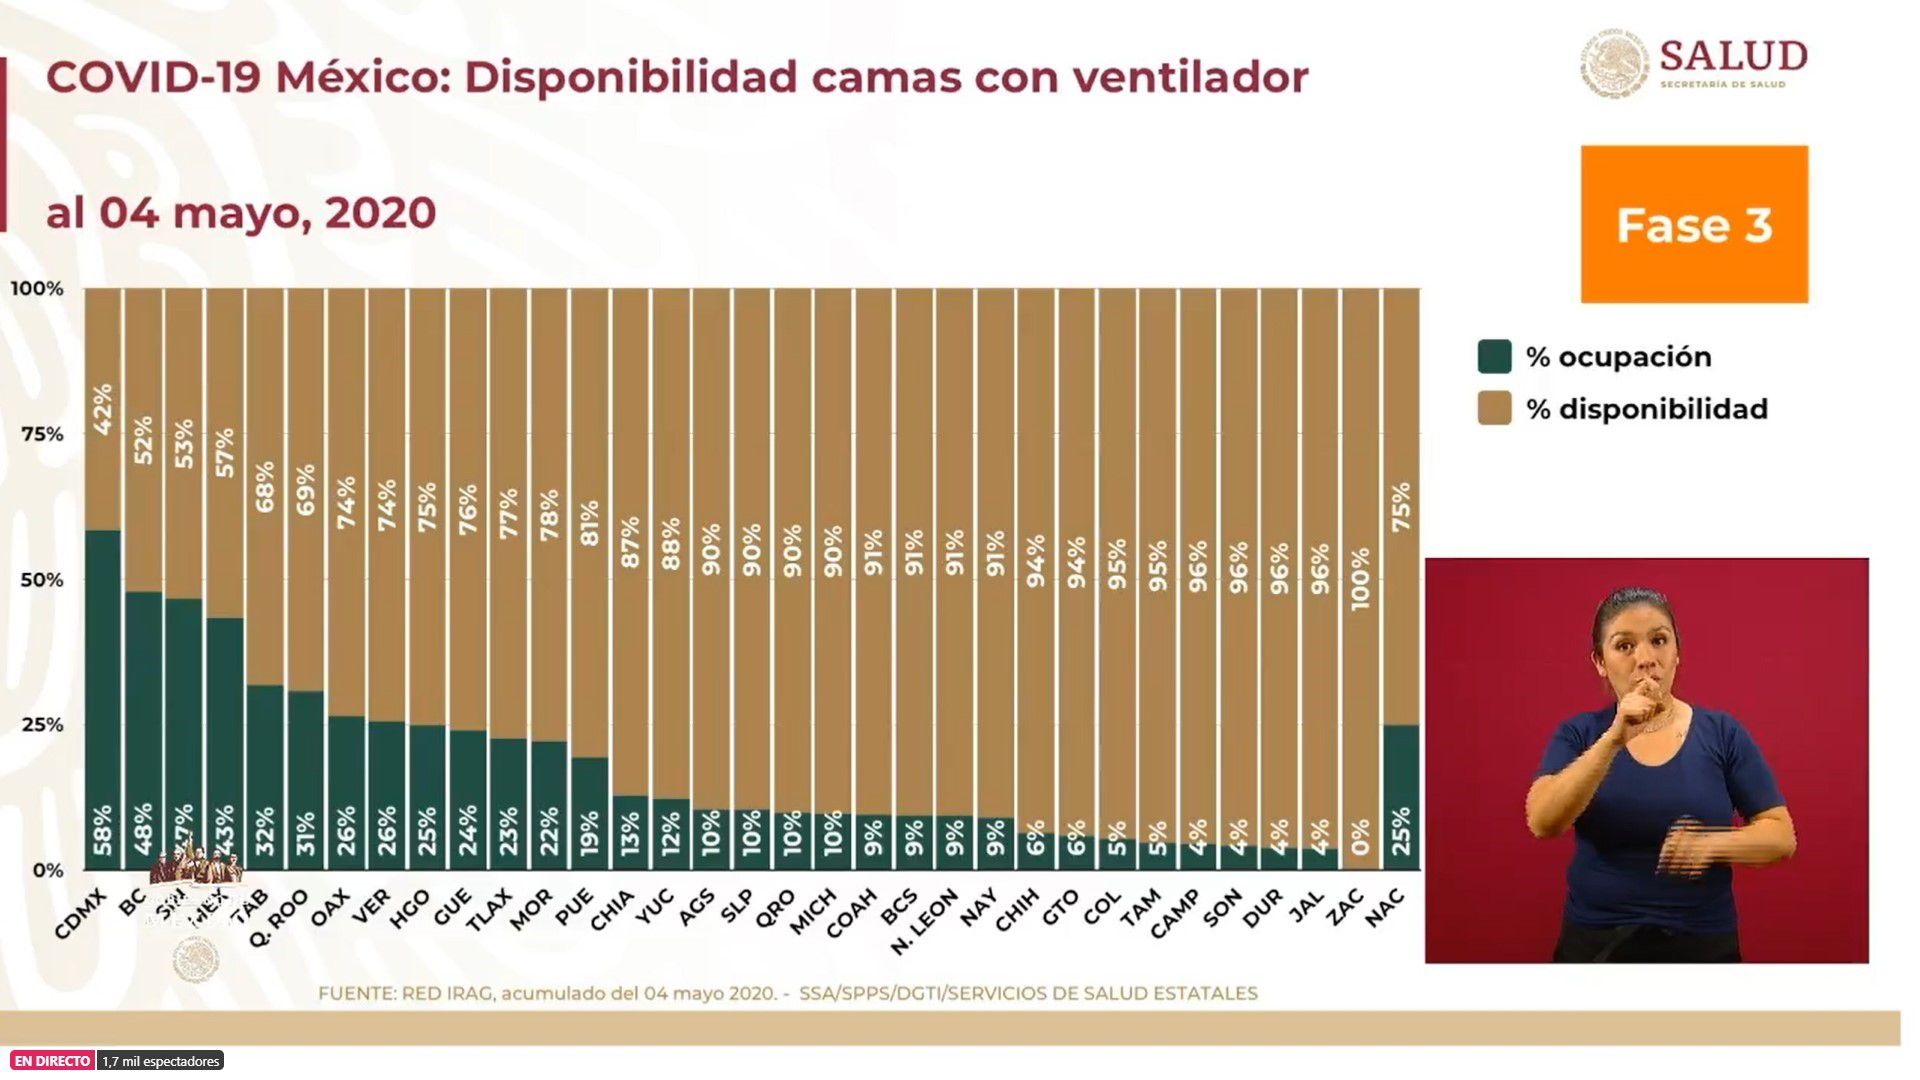 Disponibilidad de camas con ventilador en México al 4 de mayo (Foto: SSa)